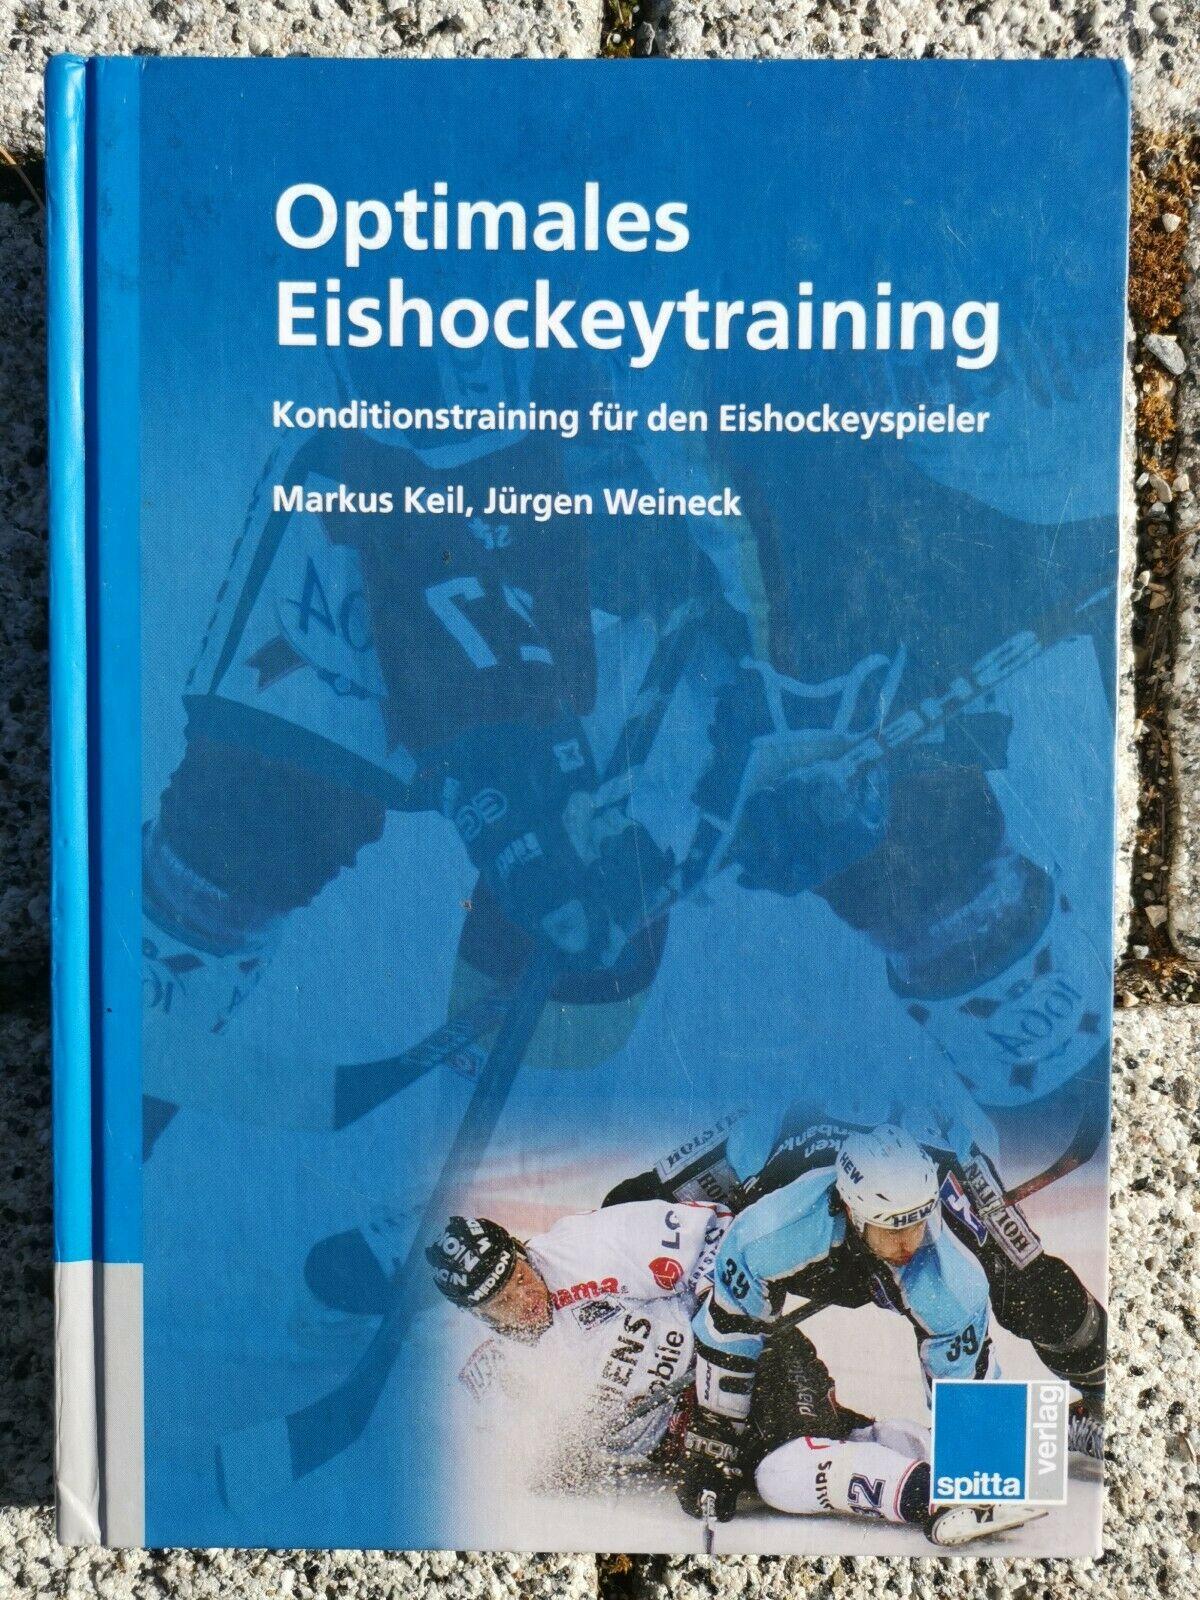 Optimales Eishockeytraining: Konditionstraining für den Eishockeyspieler, Jürgen Weineck, Markus Keil